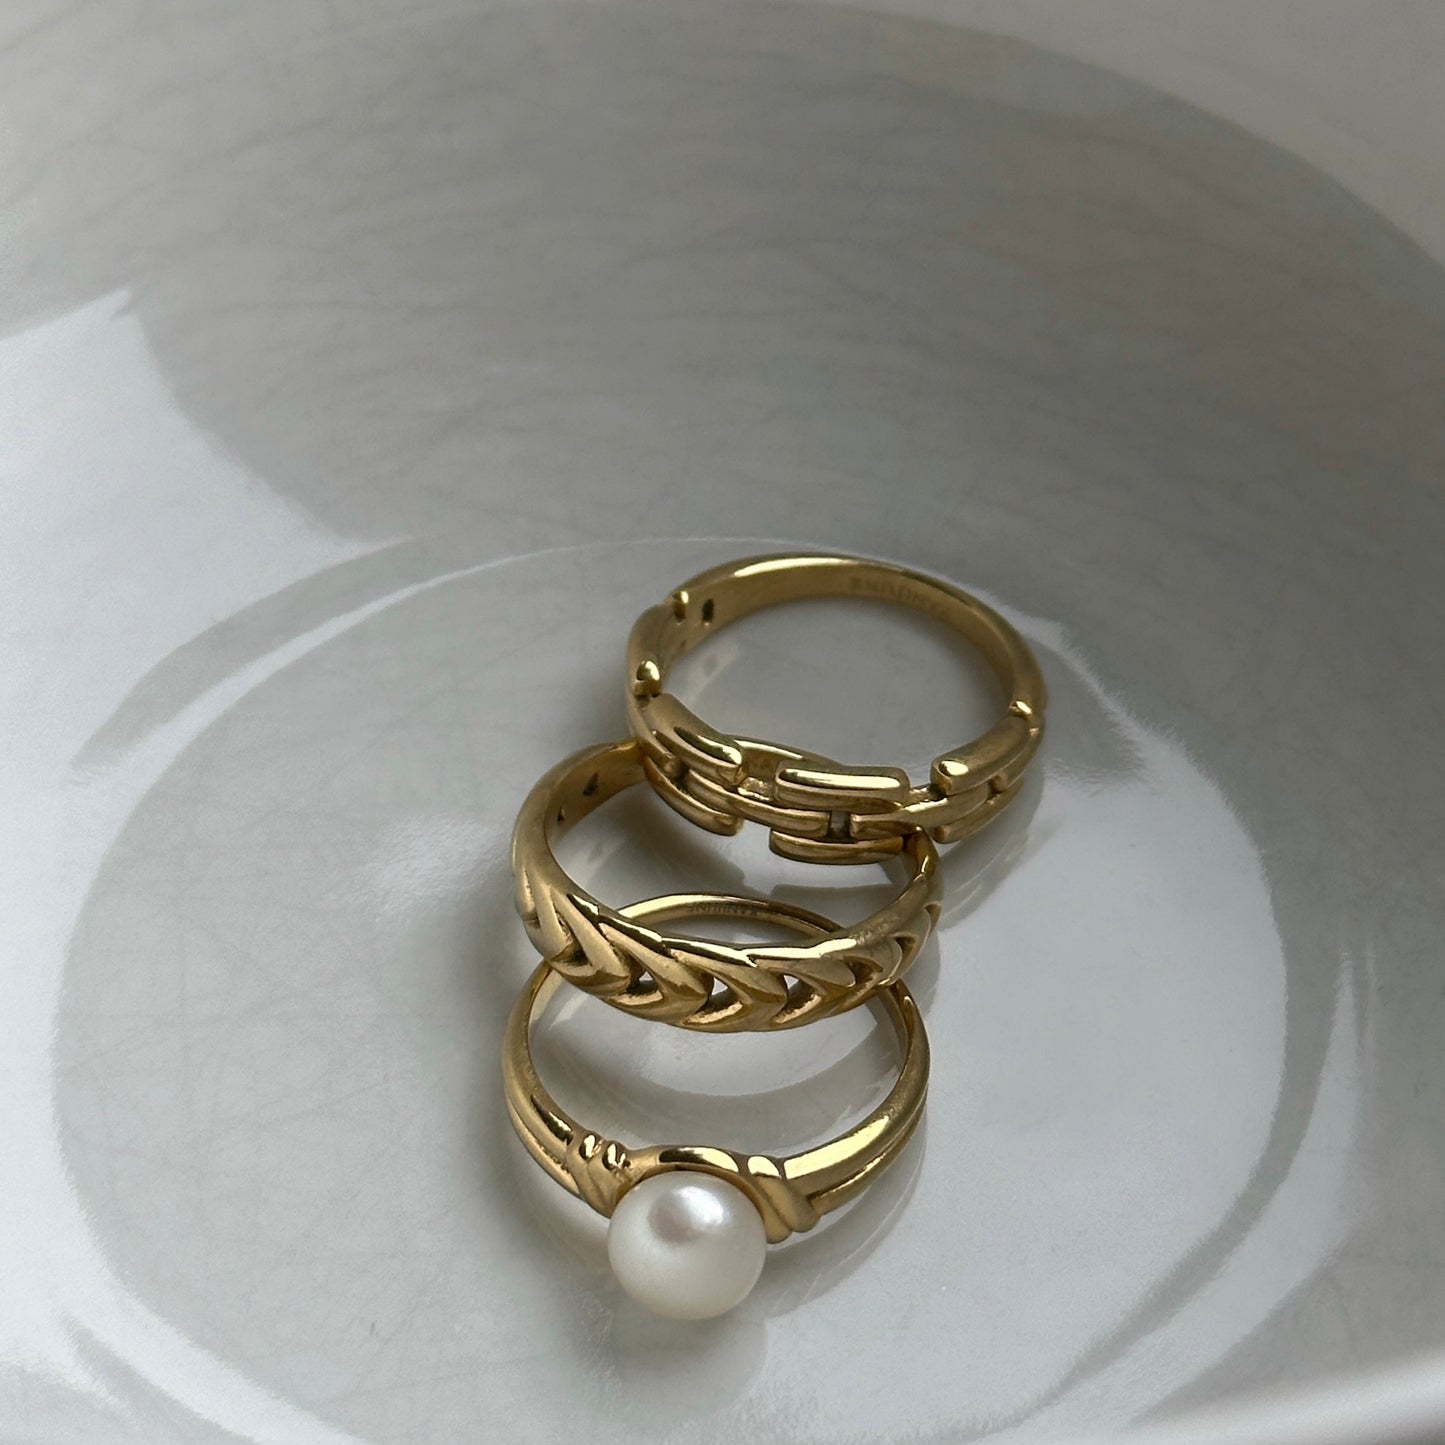 Goldener Ring mit Süßwasserperle in weißer Keramikschale zusammen mit zwei weiteren Ringen in gold